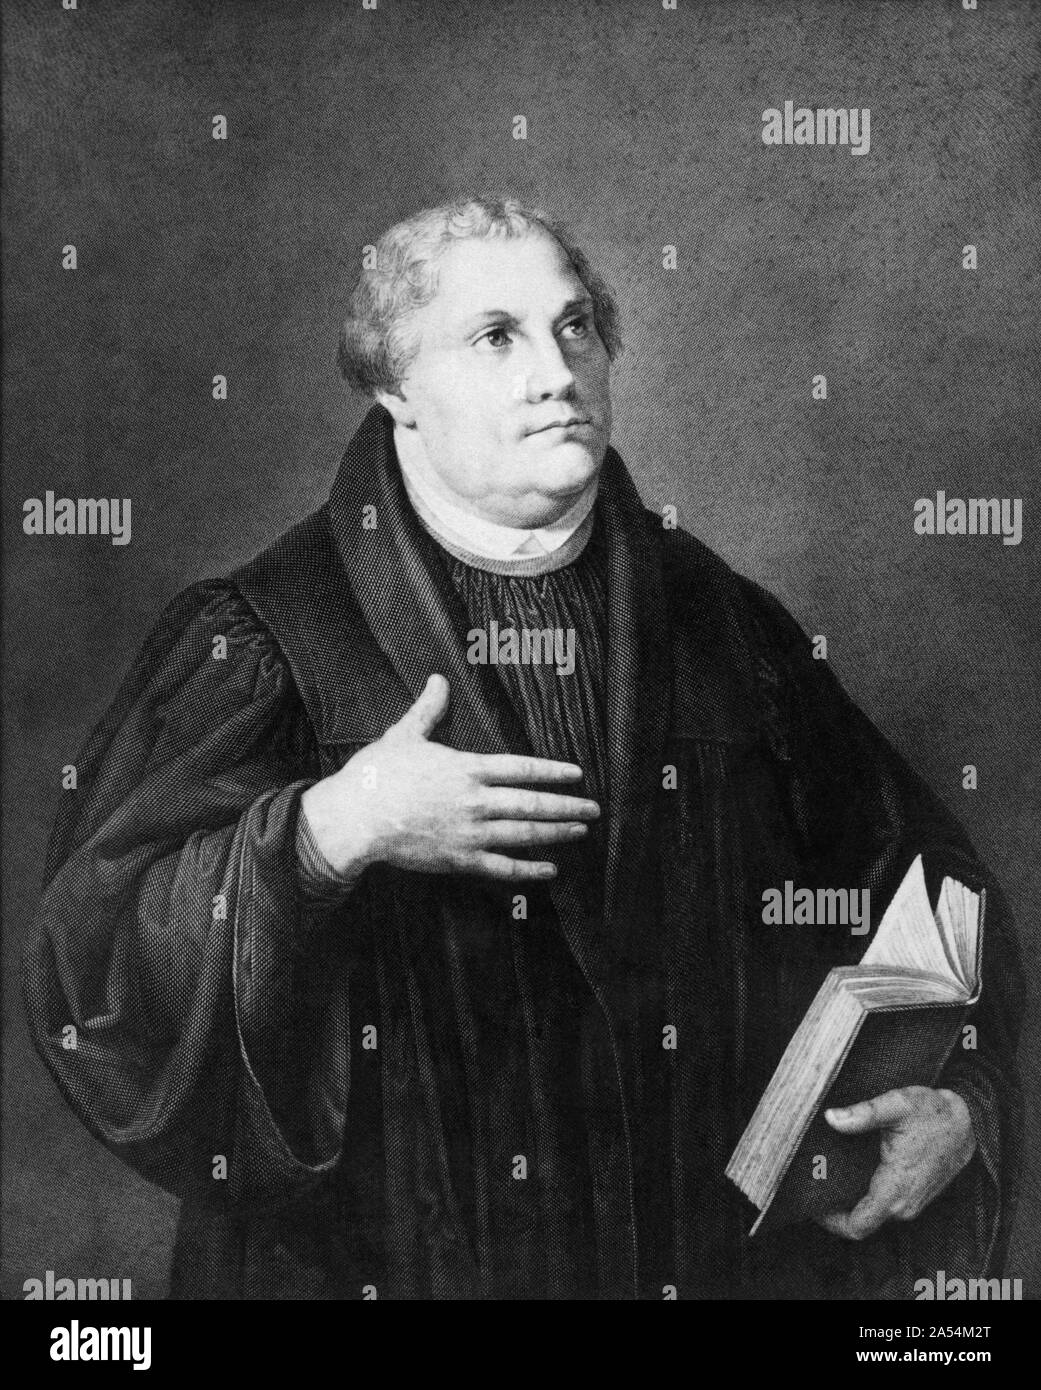 Martin Luther (1483-1546), deutscher Professor, Theologe, und Schlüsselfigur in der Protestantischen Reformation, sowie als Übersetzer der Bibel in die deutsche Sprache. (Gravur von einem portrait Gemälde von Lucas Cranach d.) Stockfoto